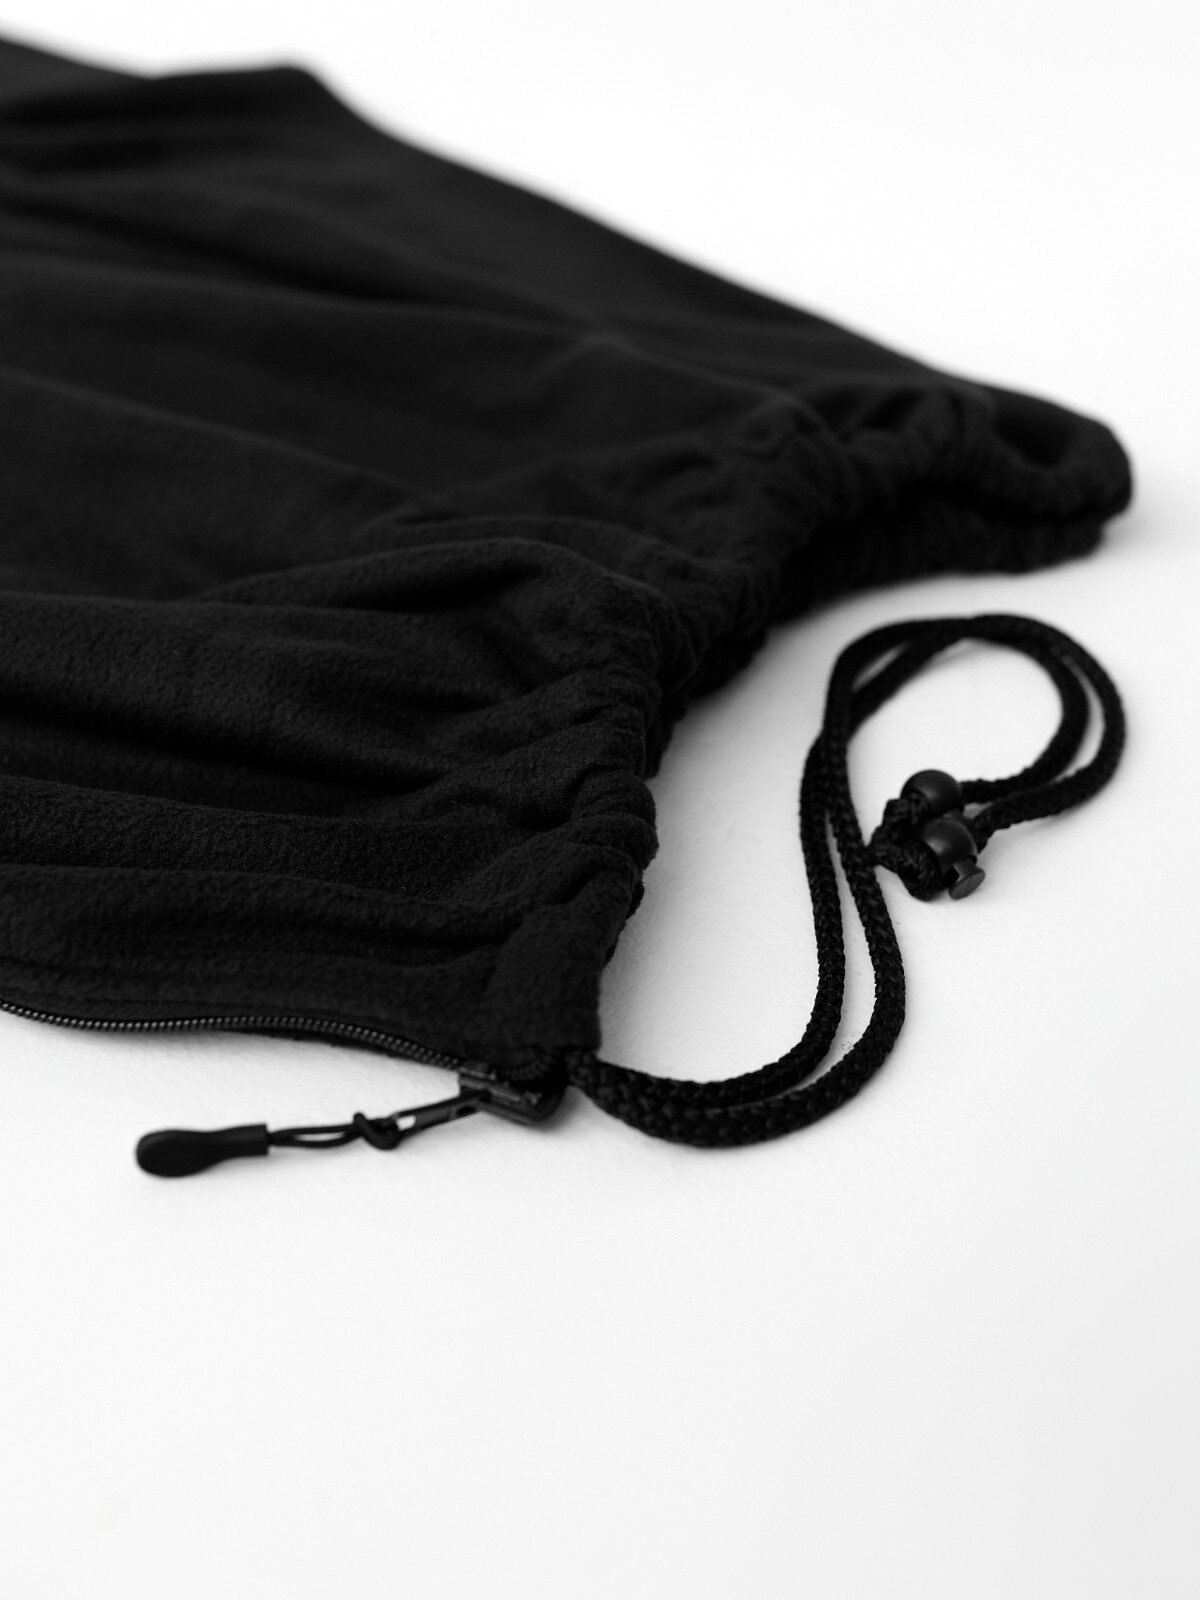 Флисовый вкладыш в спальный мешок 190*75 одеяло утеплитель спальника Everena black fleece 190_75